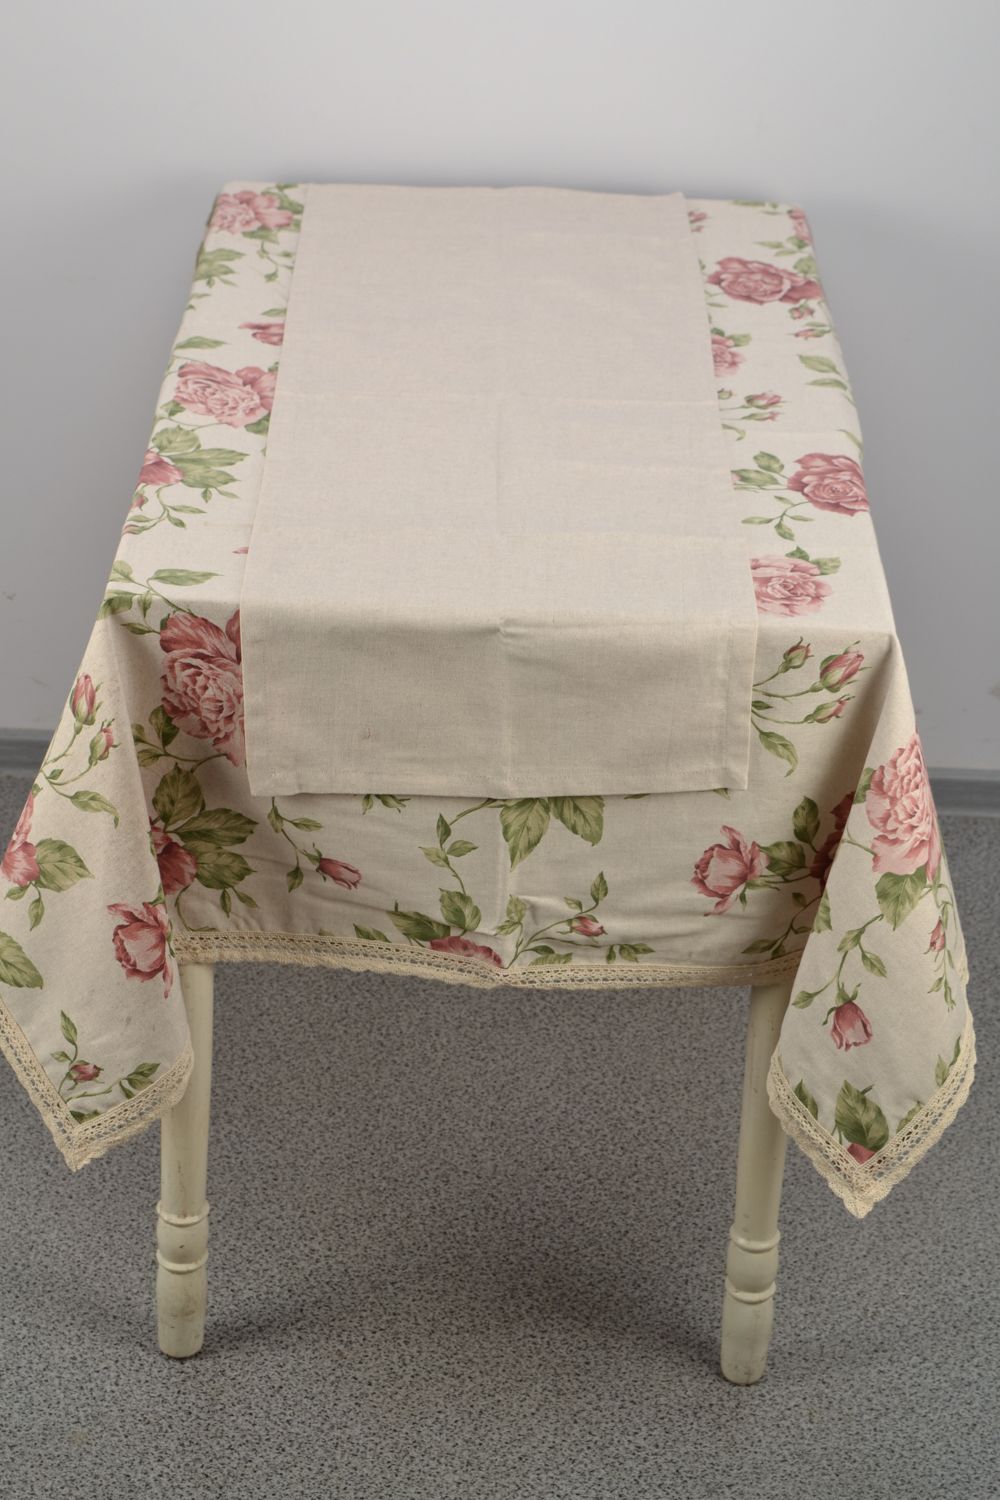 Скатерть на прямоугольный стол тканевая с большими розами фото 4